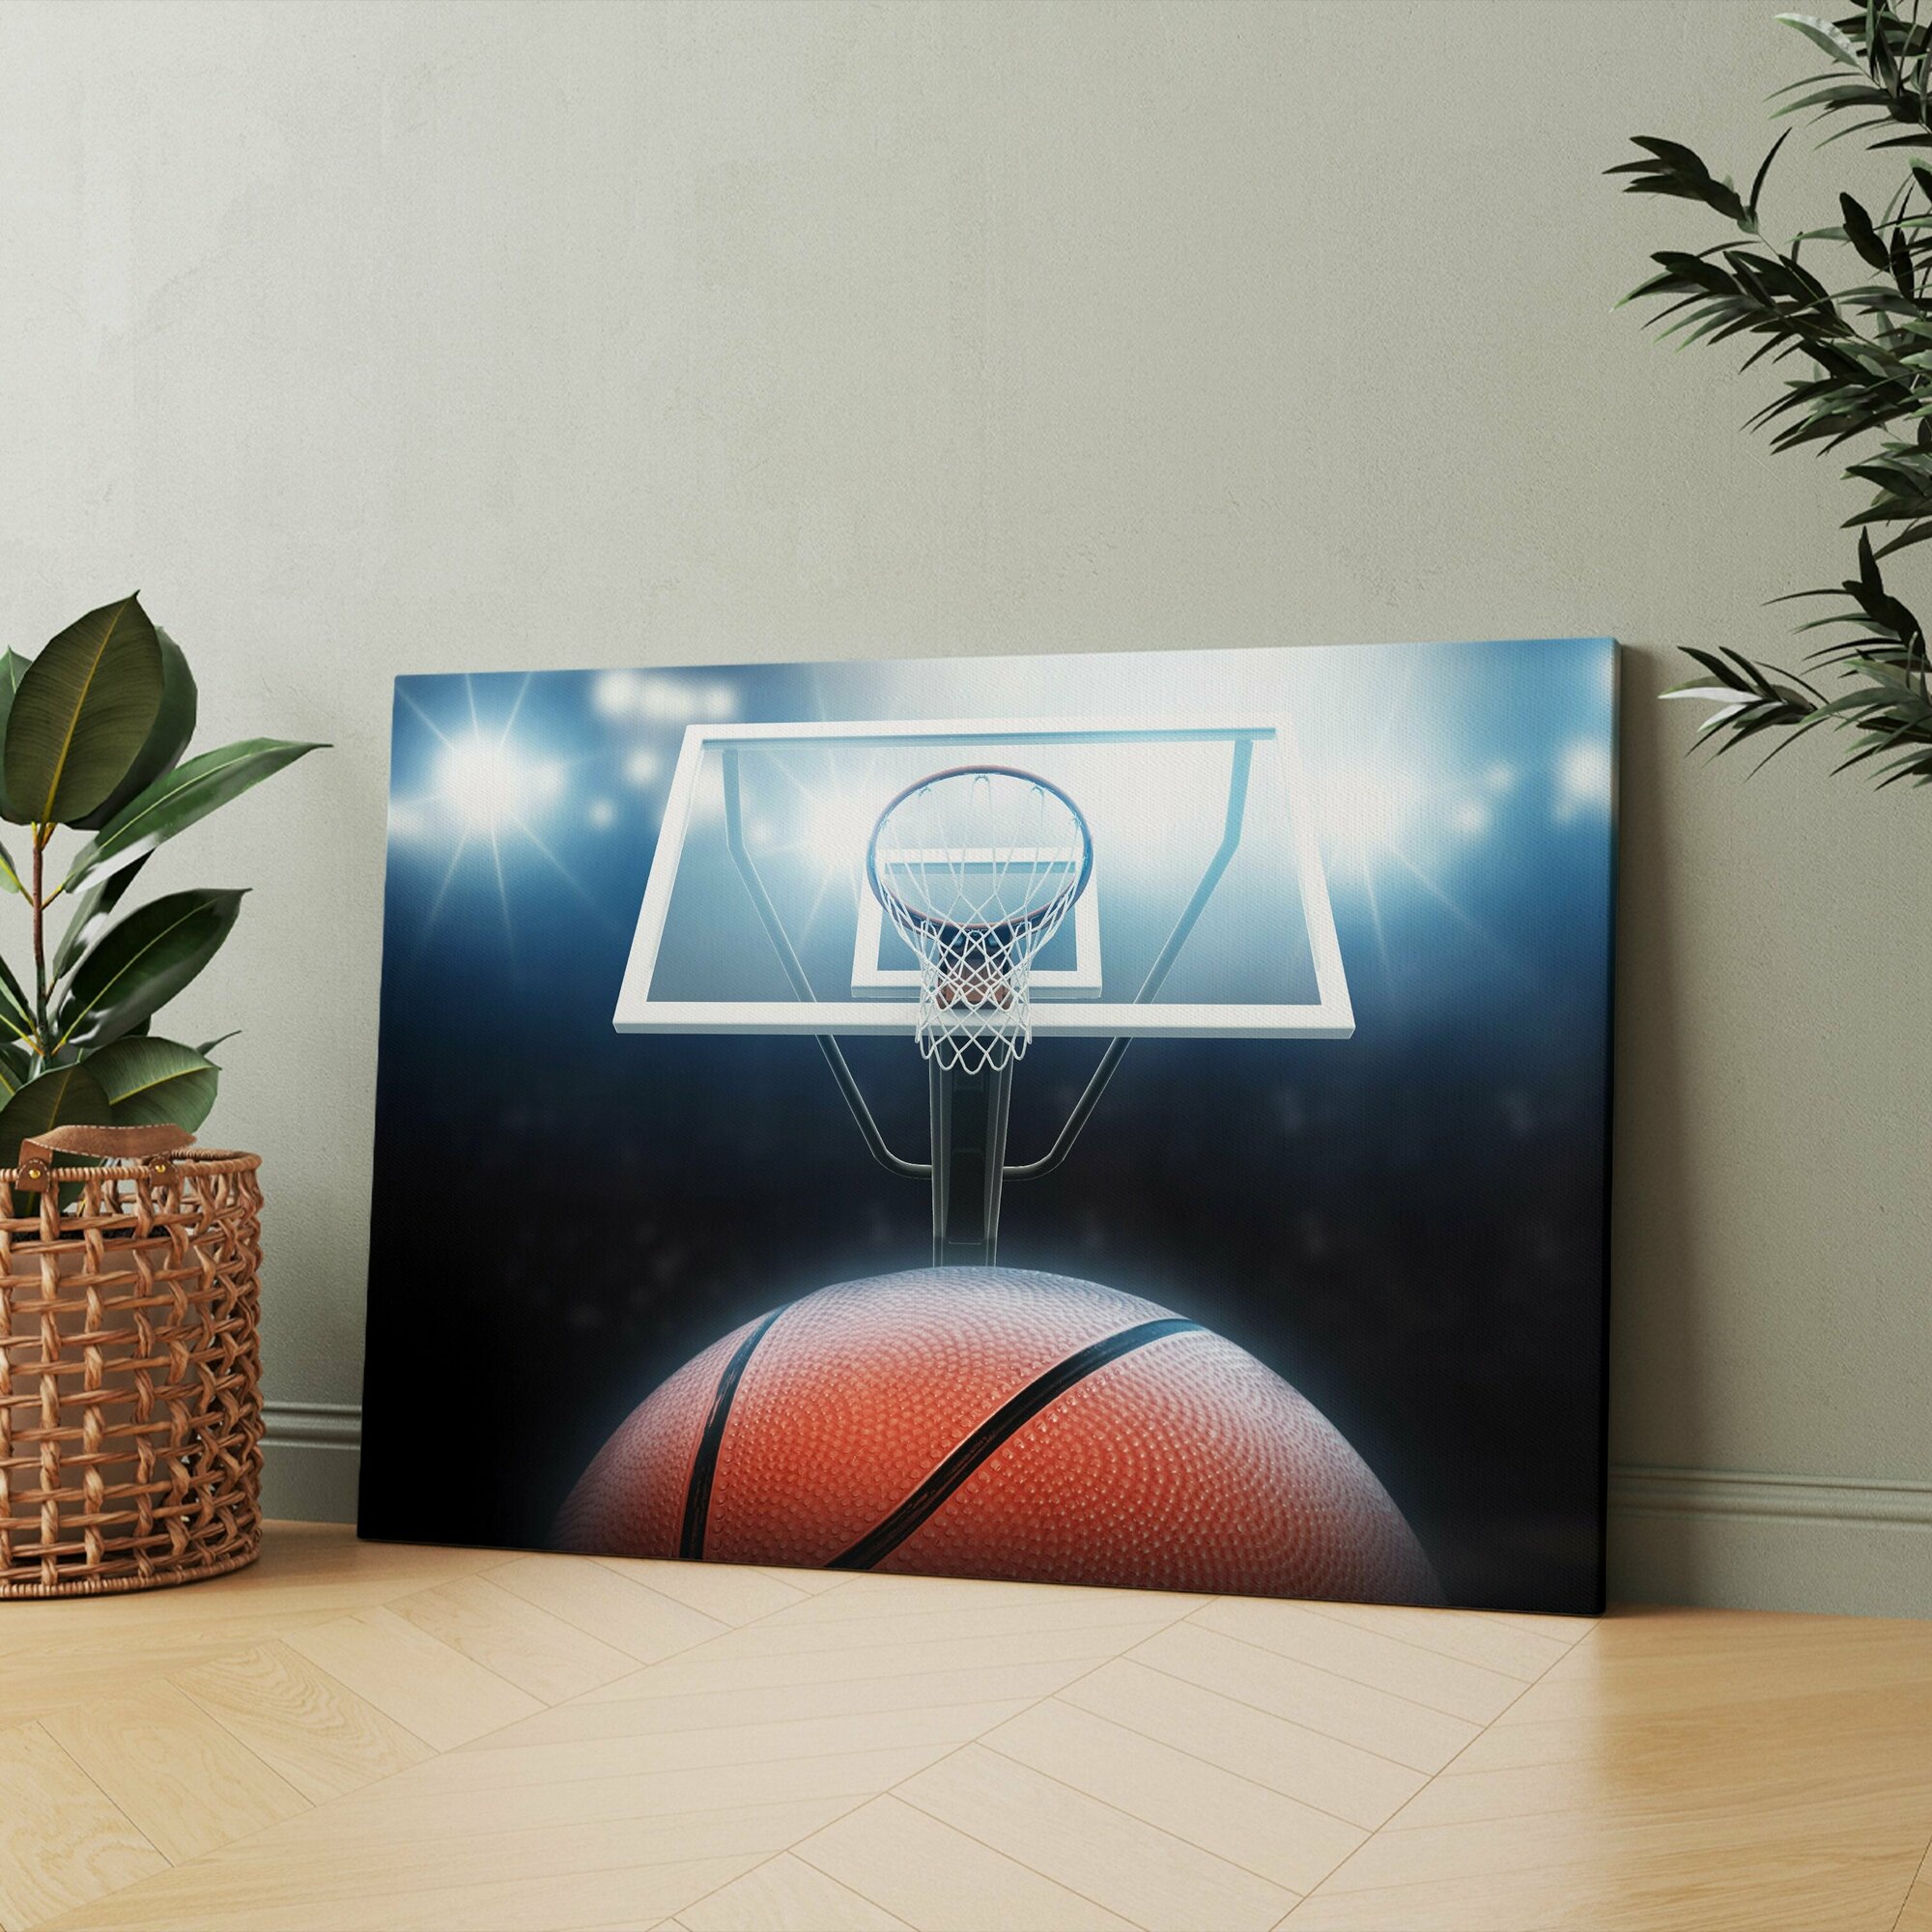 Картина на холсте "Баскетбольный мяч проходит через кольцо на баскетбольной площадке" 30x40 см. Интерьерная, на стену.